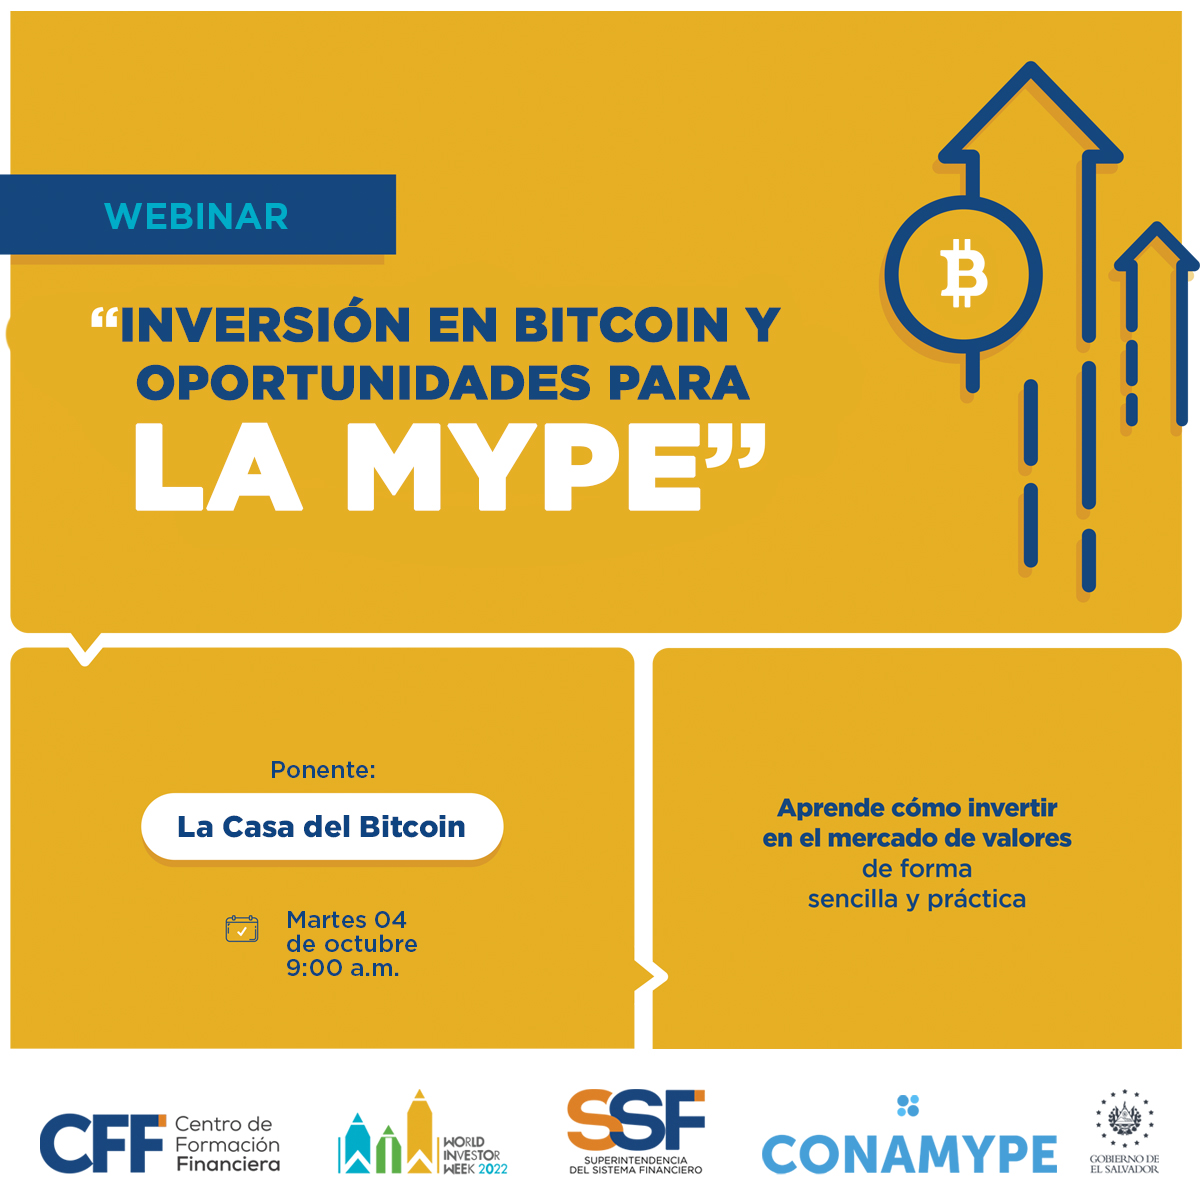 Inversión en Bitcoin y oportunidades para la MYPE